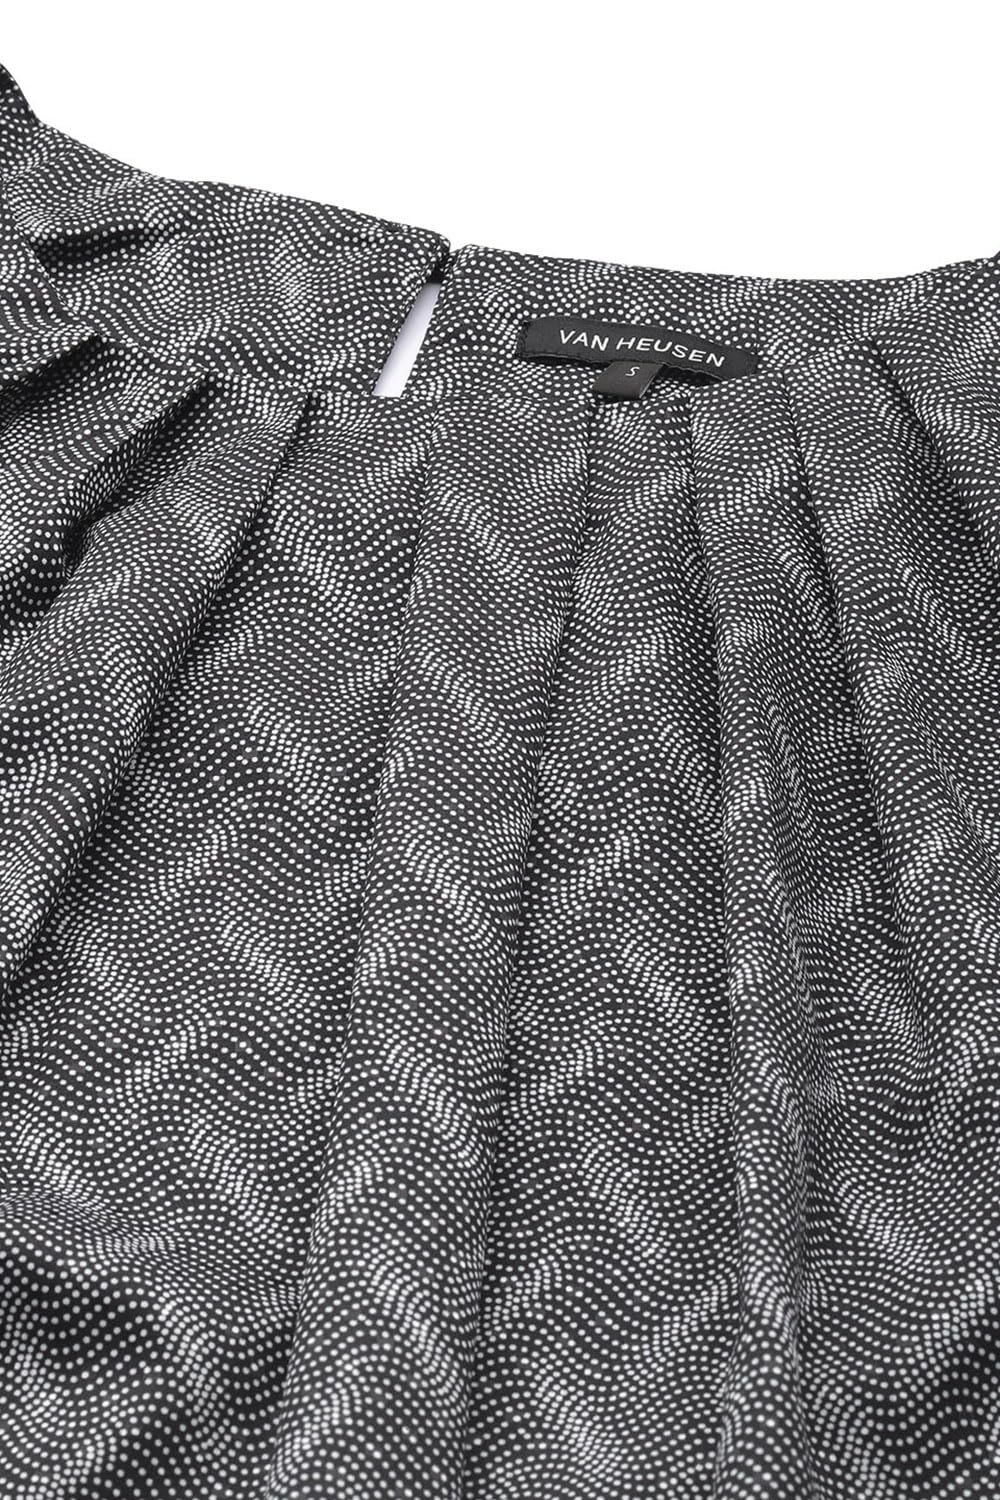 Van Heusen Women's Regular Fit Shirt (VWTSFRGP154641_Grey